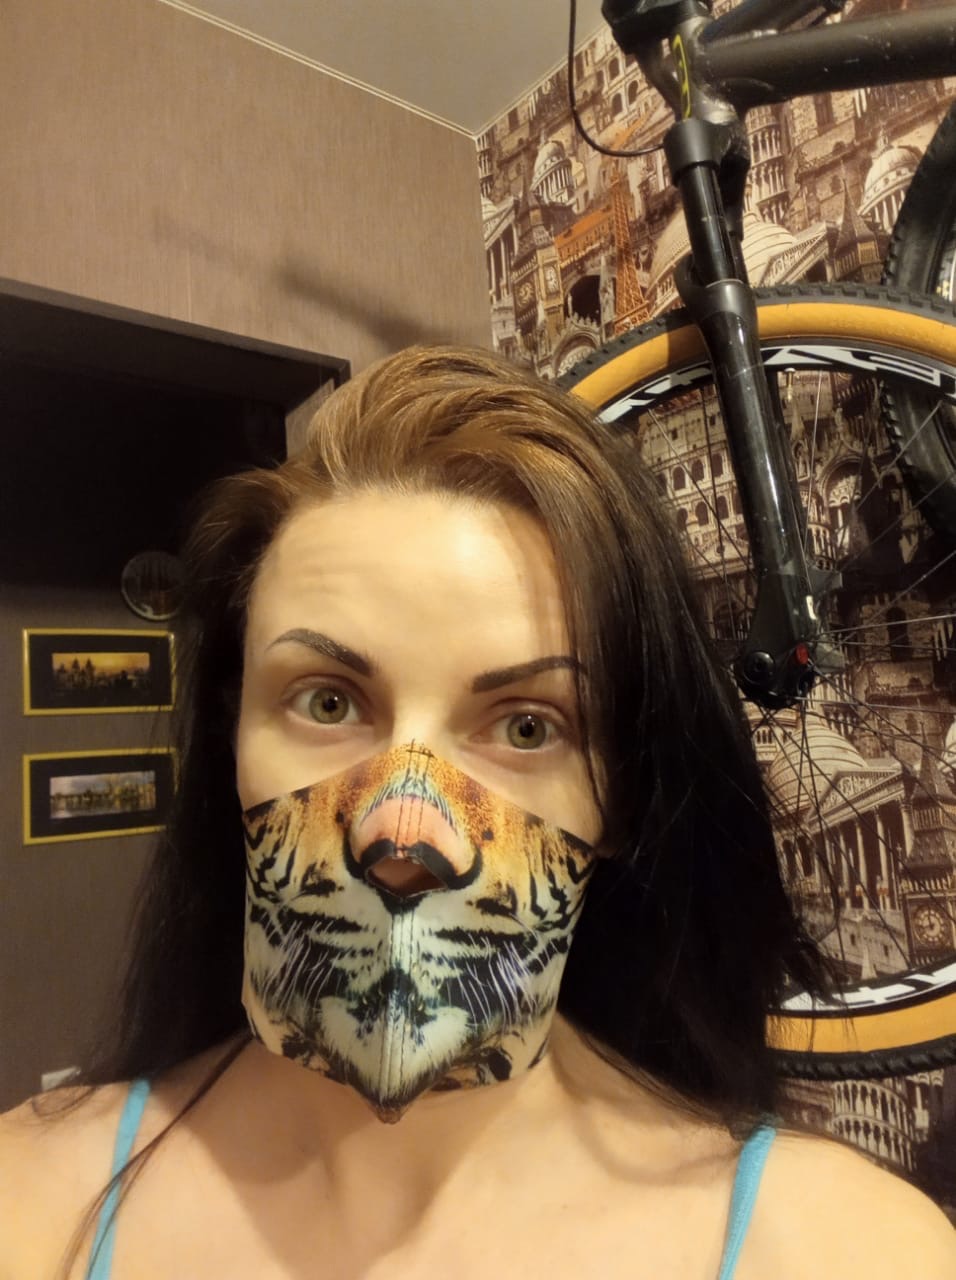 Своей «тигровой» маской девушка пользуется не только против коронавируса